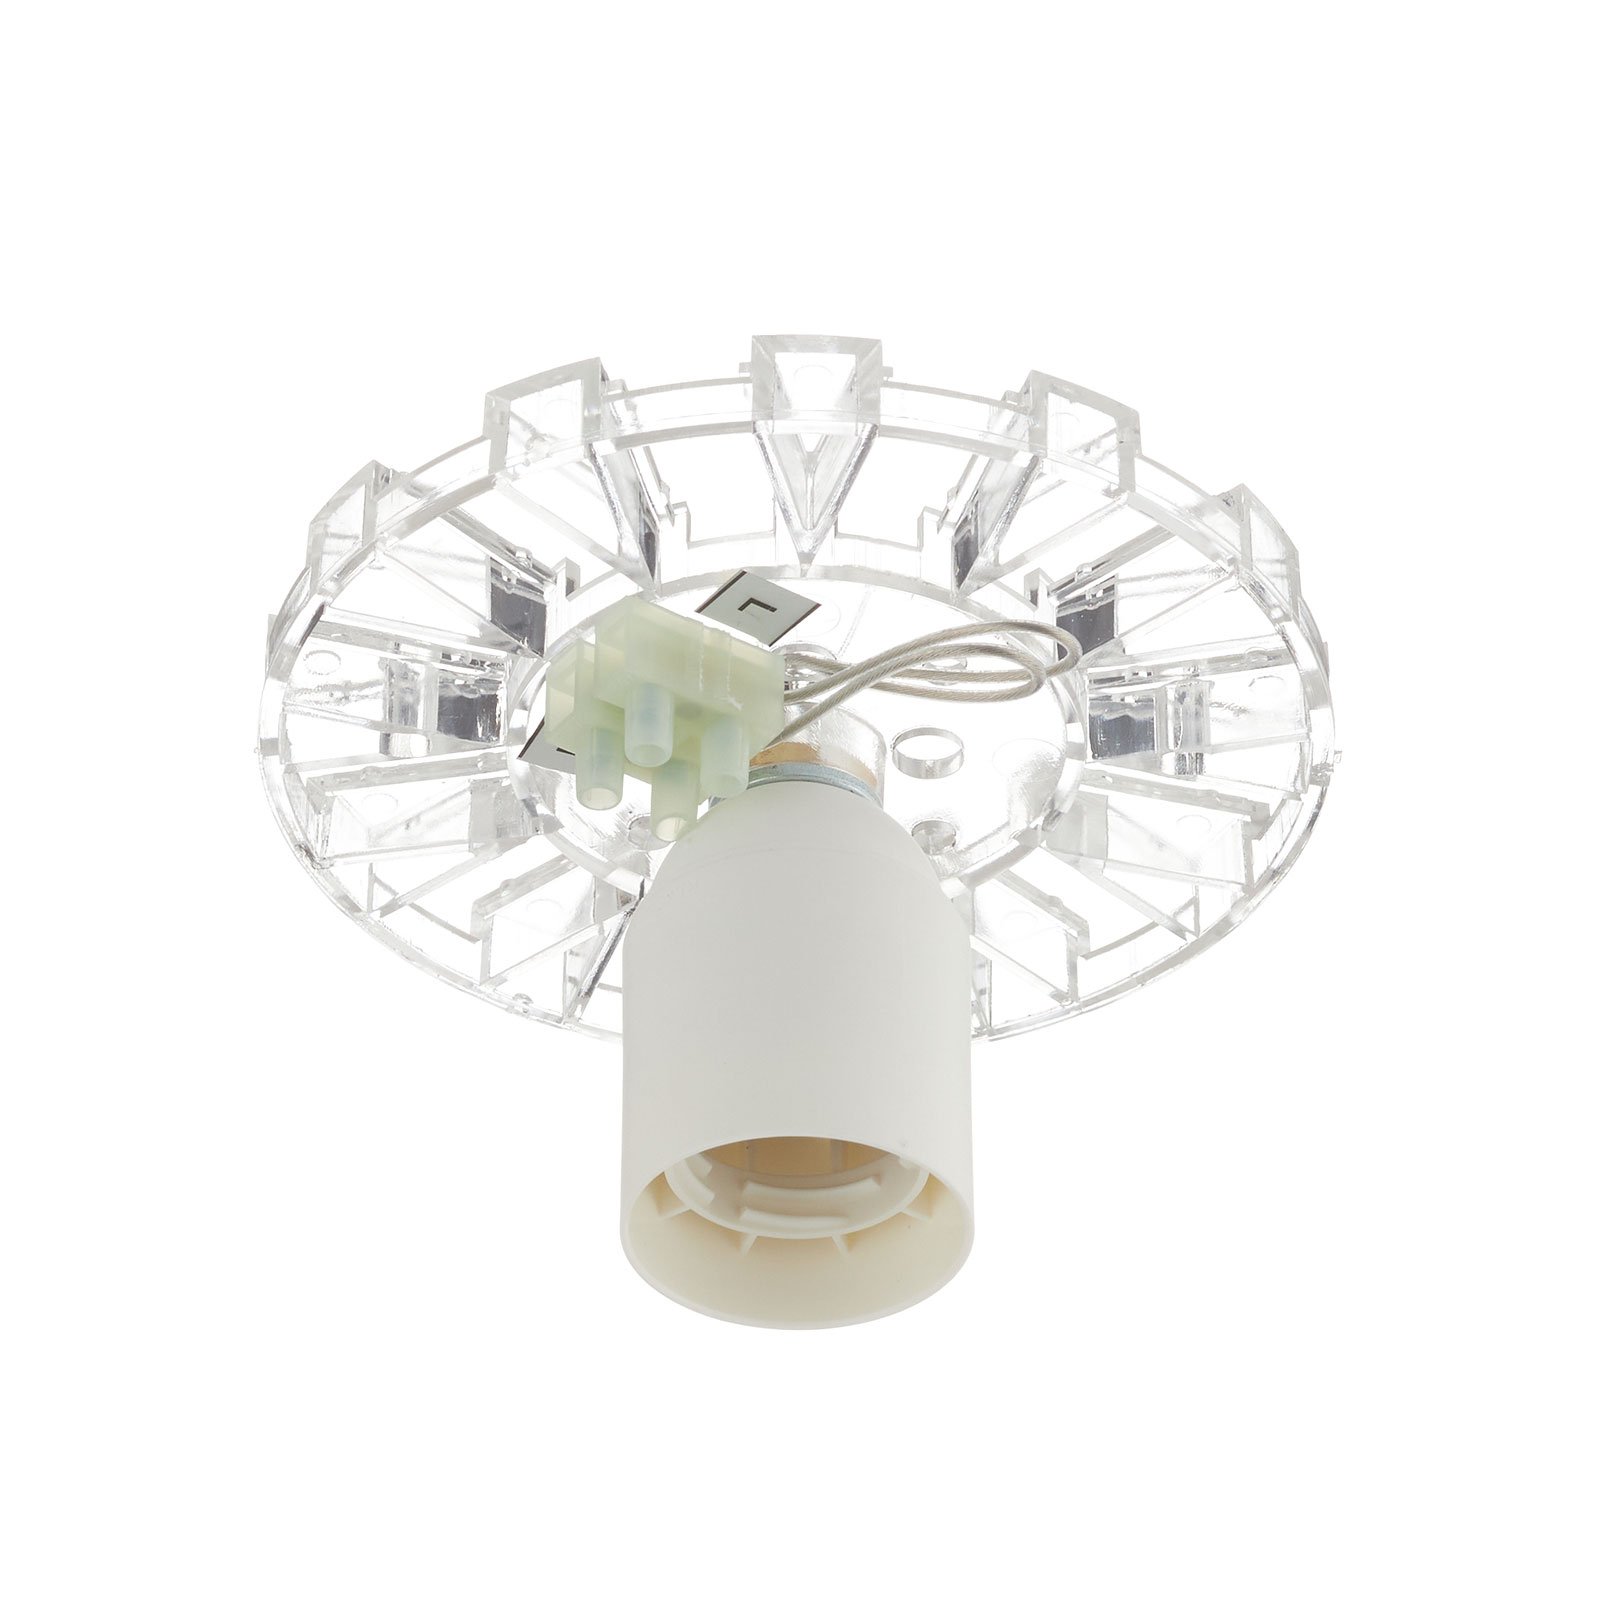 Artemide Teti designer ceiling light, white